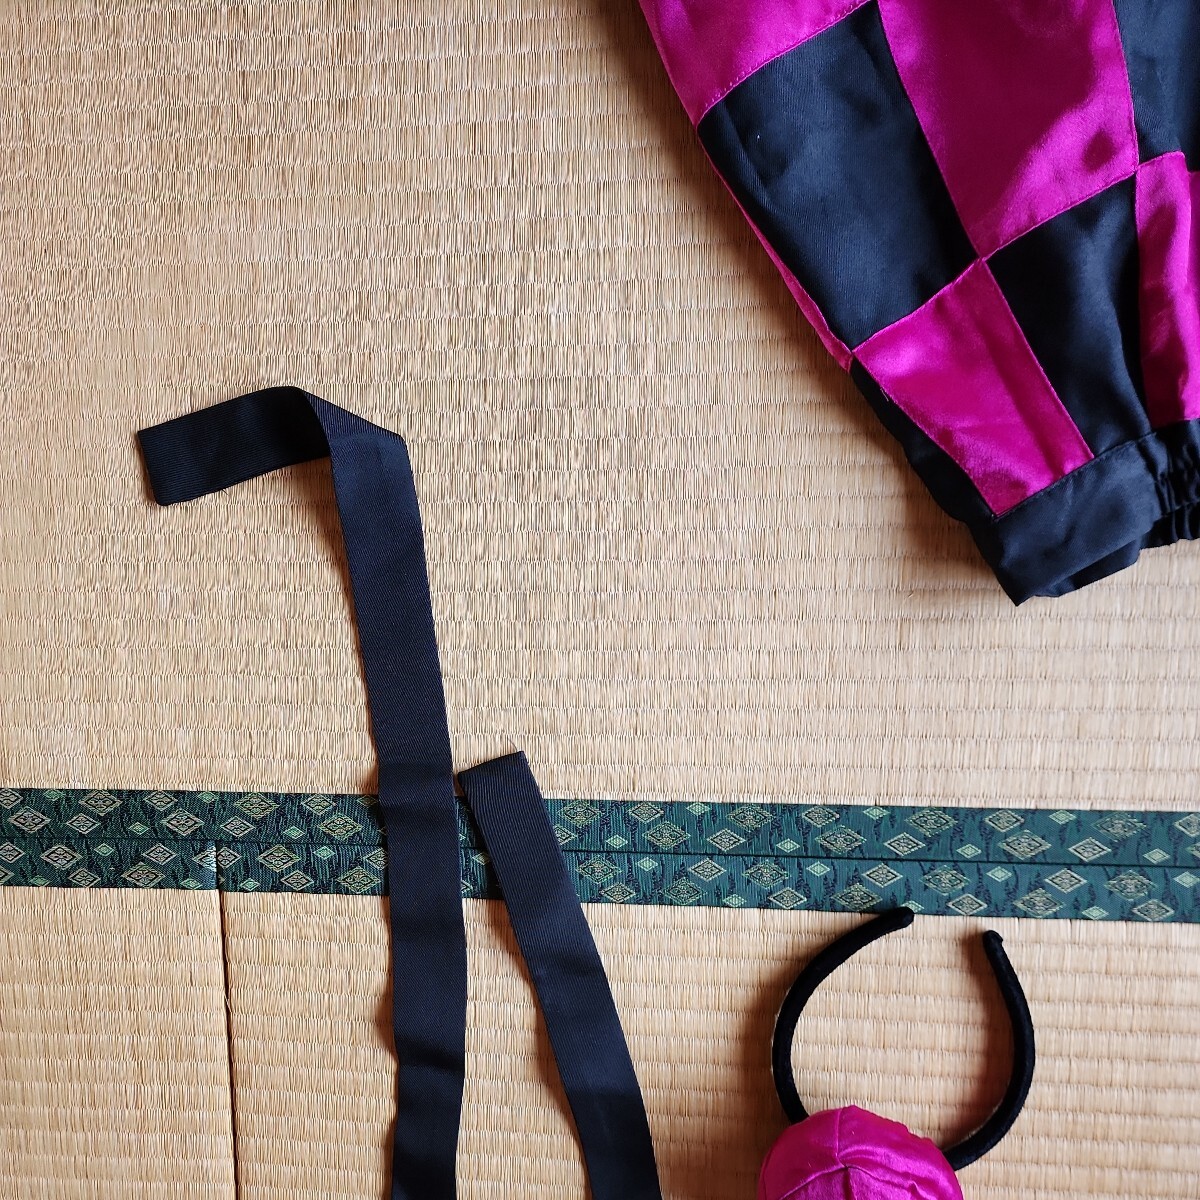 東方project 姫海棠はたて Mサイズ 一円スタートコスプレ衣裳 スカートと頭のピンクパープルはすべすべした生地です 黒にピンクの画像5